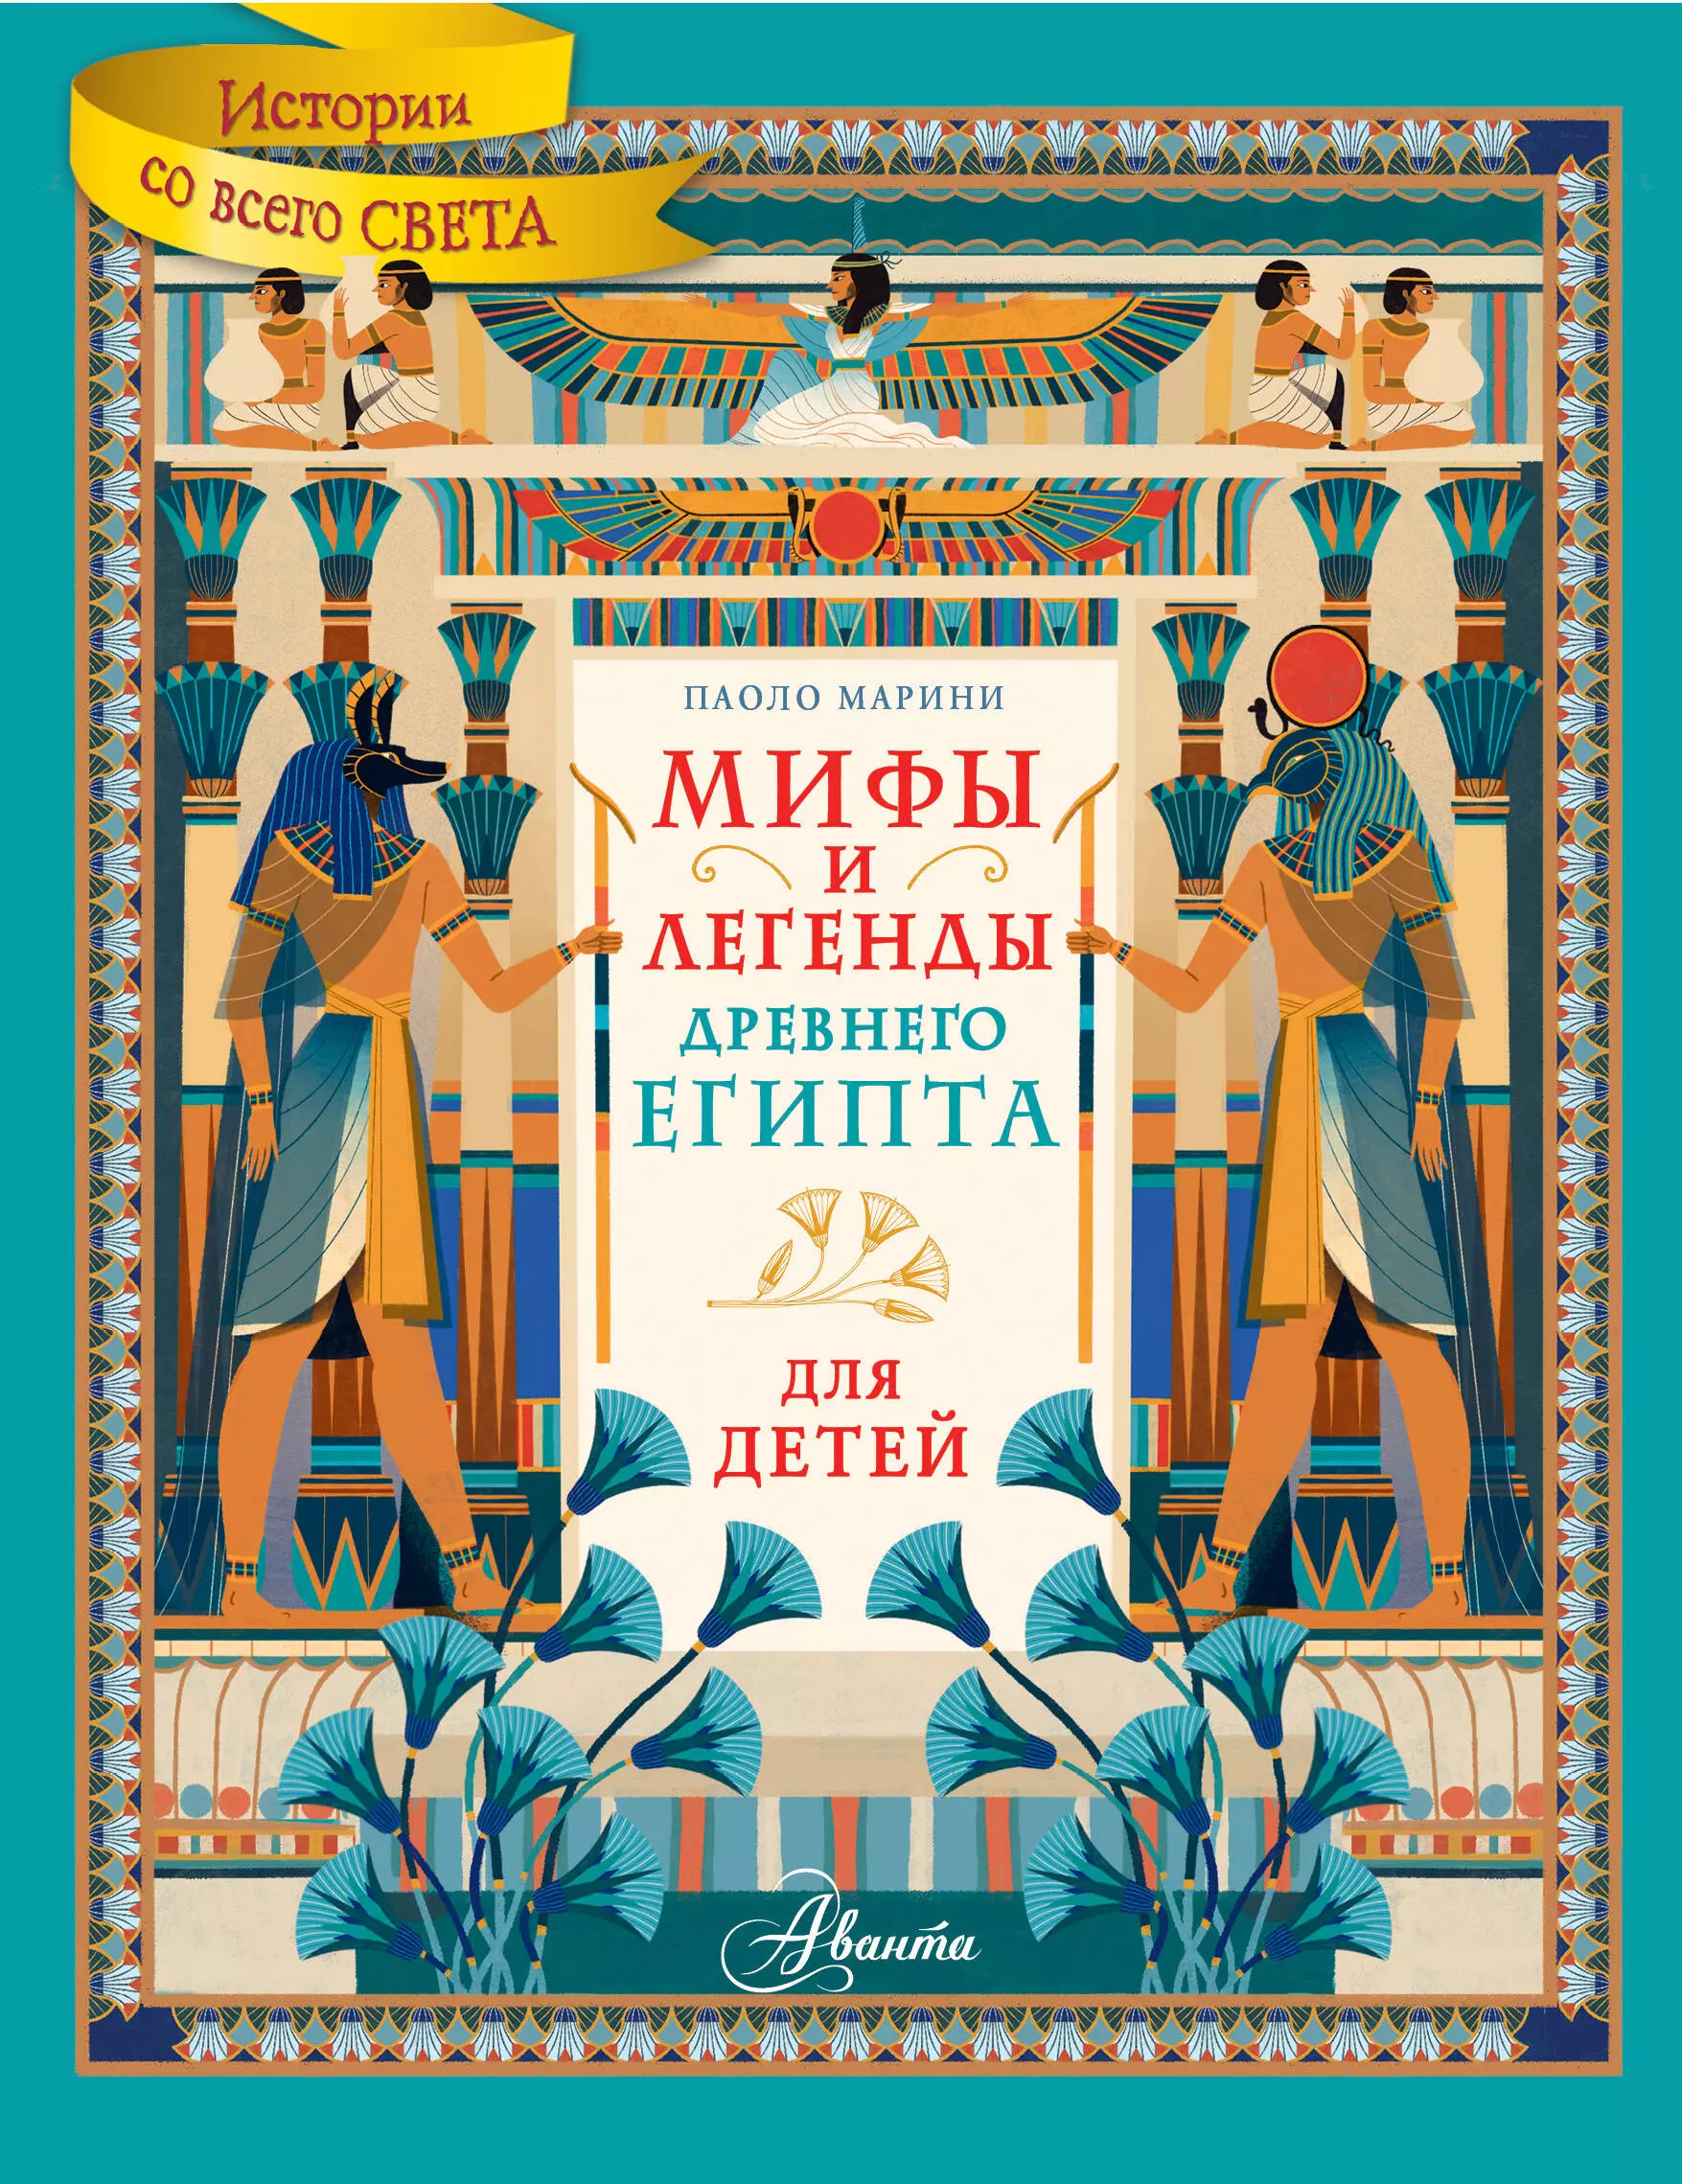 Мифы и легенды Древнего Египта для детей марини паоло мифы и легенды древнего египта для детей